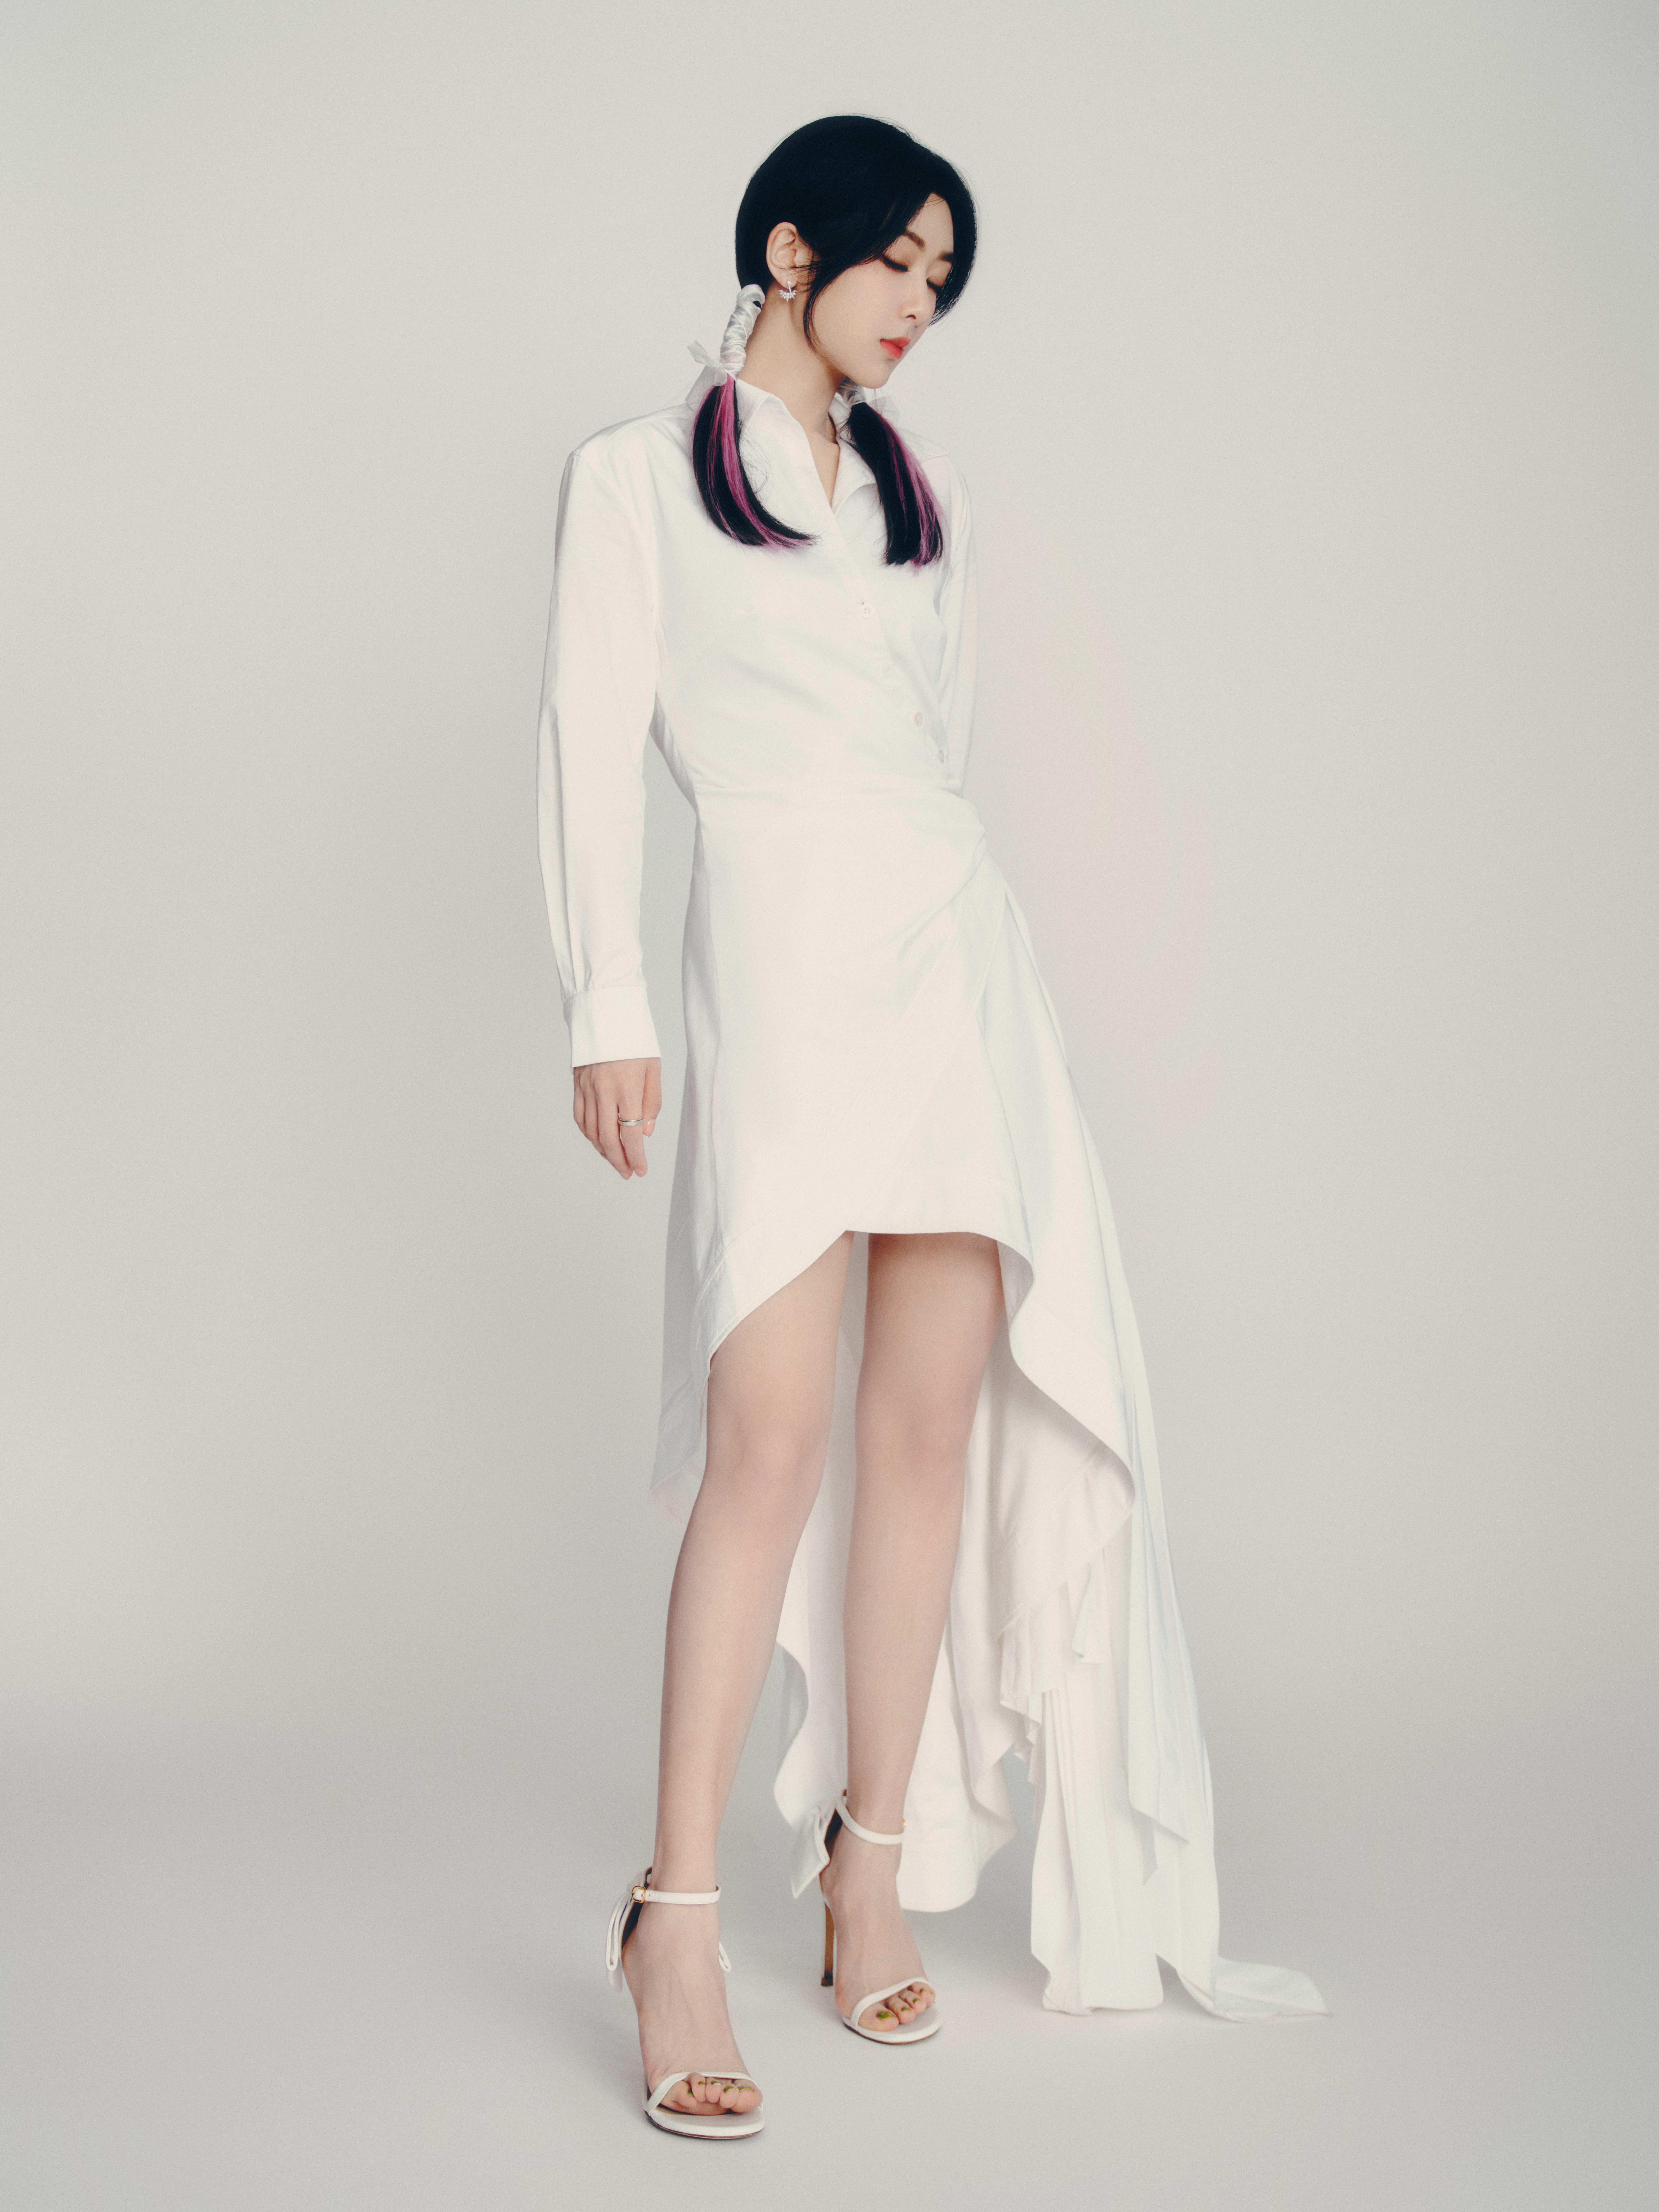 杨紫穿白色衬衫裙造型清新 紫色挑染双马尾显俏皮可爱,1 (6)